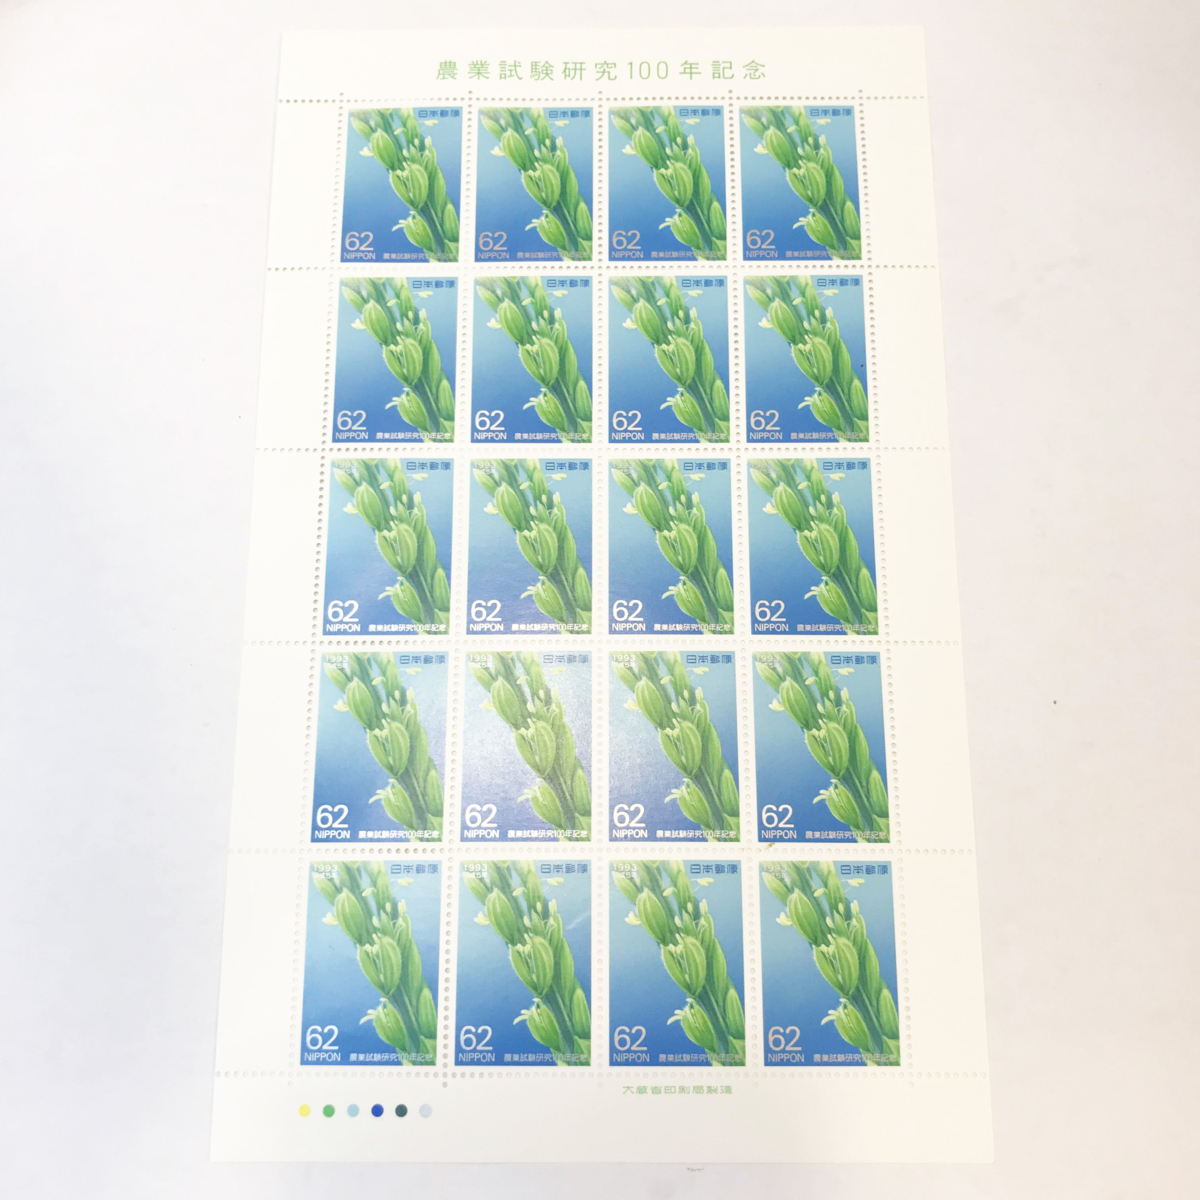 qos.33-010 農業試験研究100周年記念 62円×20枚 切手シート1枚_画像1